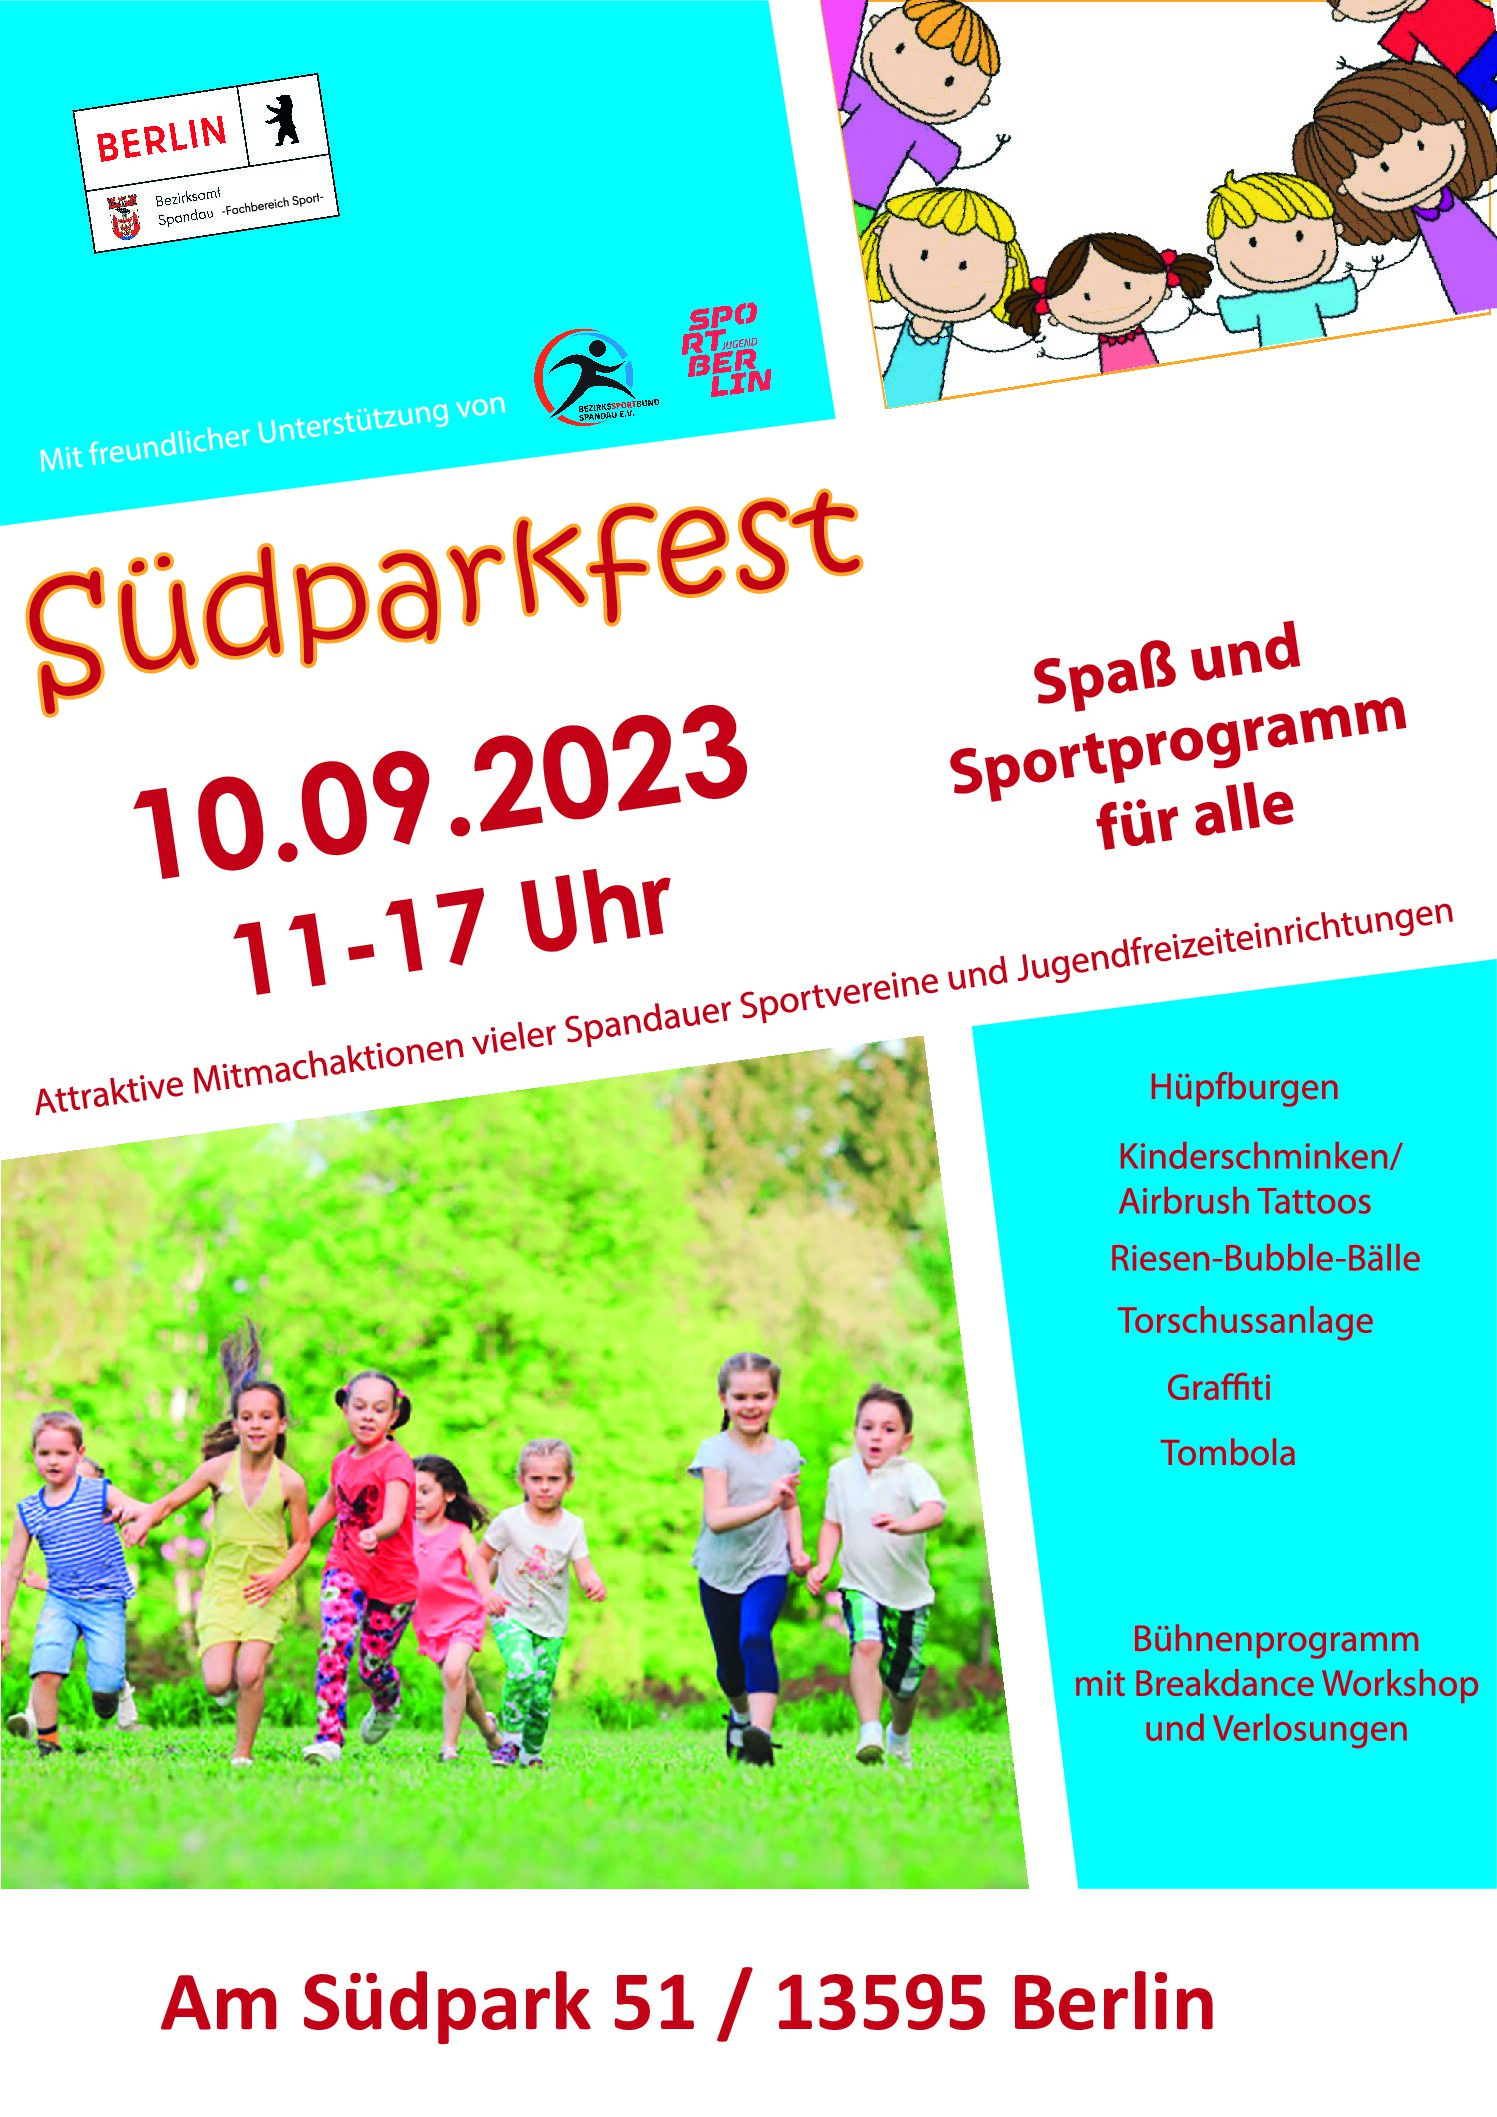 Familiensportfest im Südpark am 10.09.2023 – Pickleball mit dabei!